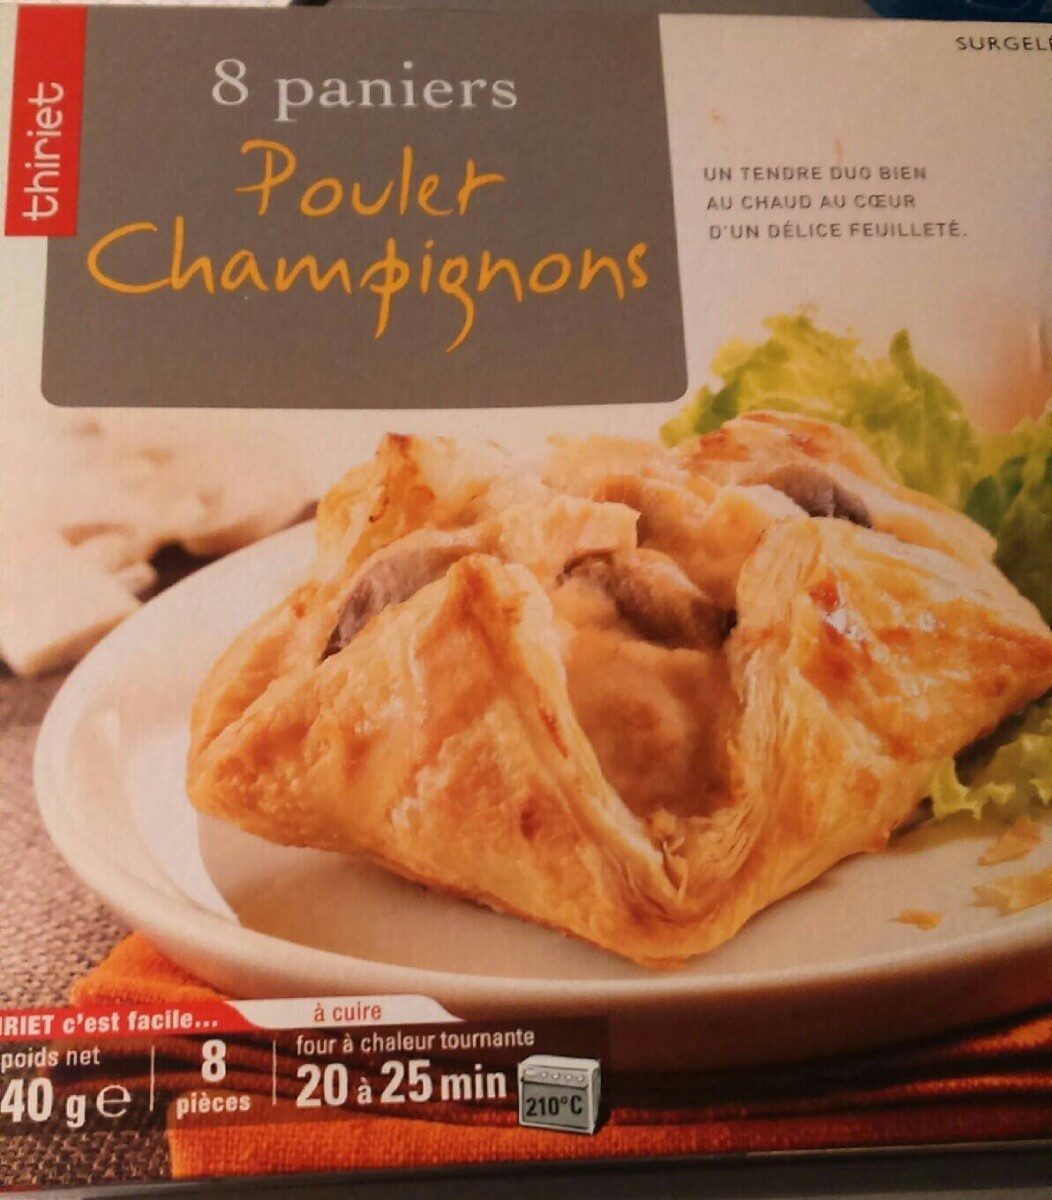 Panier Poulet Champignon - Product - fr